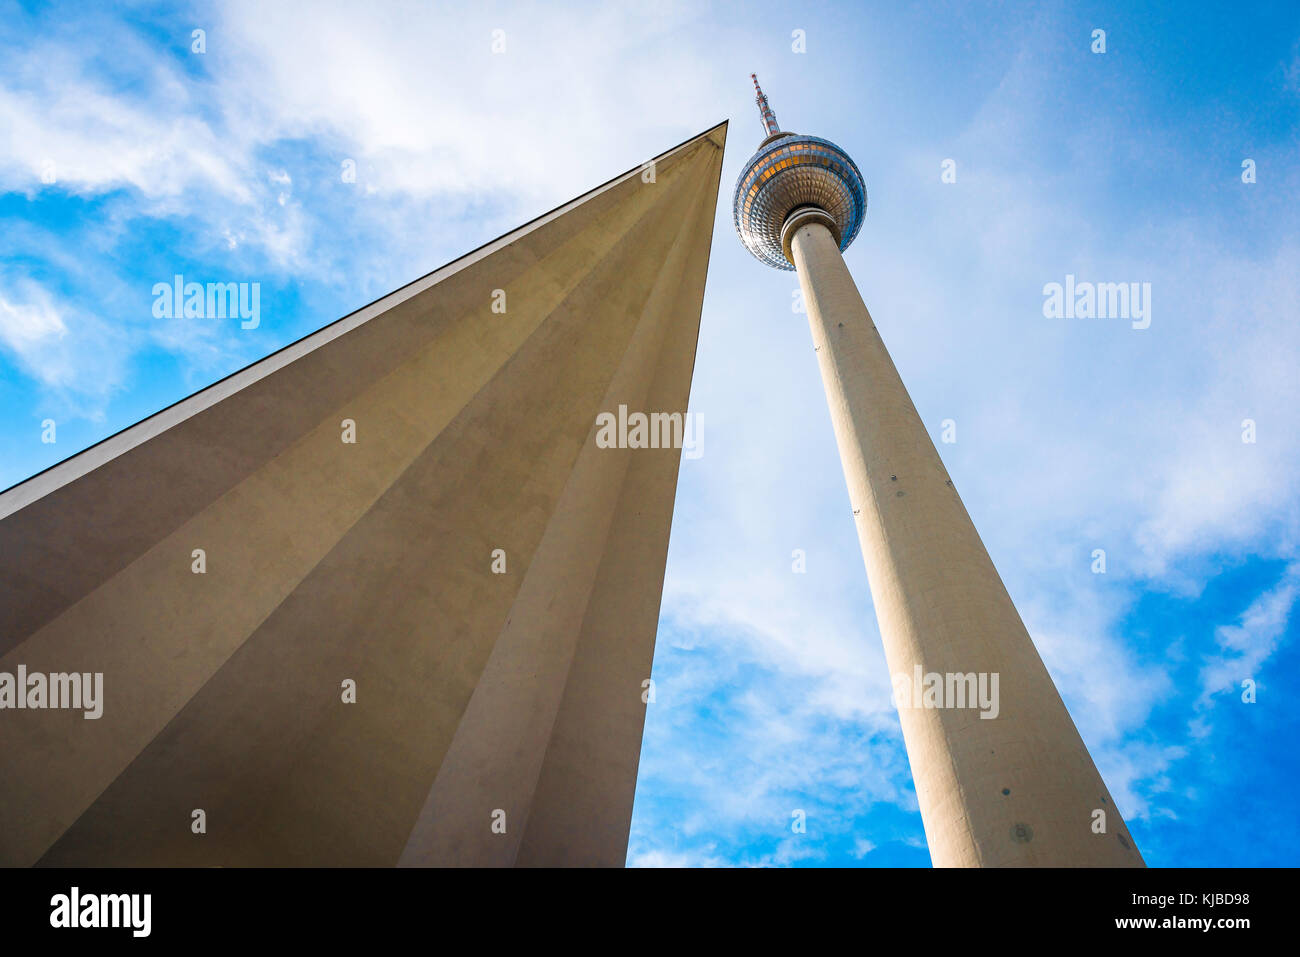 Berliner Architektur, Boden aus Sicht der 365 Meter hohe Fernsehturm Turm und seine base Gebäude im Bezirk Alexanderplatz, Berlin, Deutschland Stockfoto